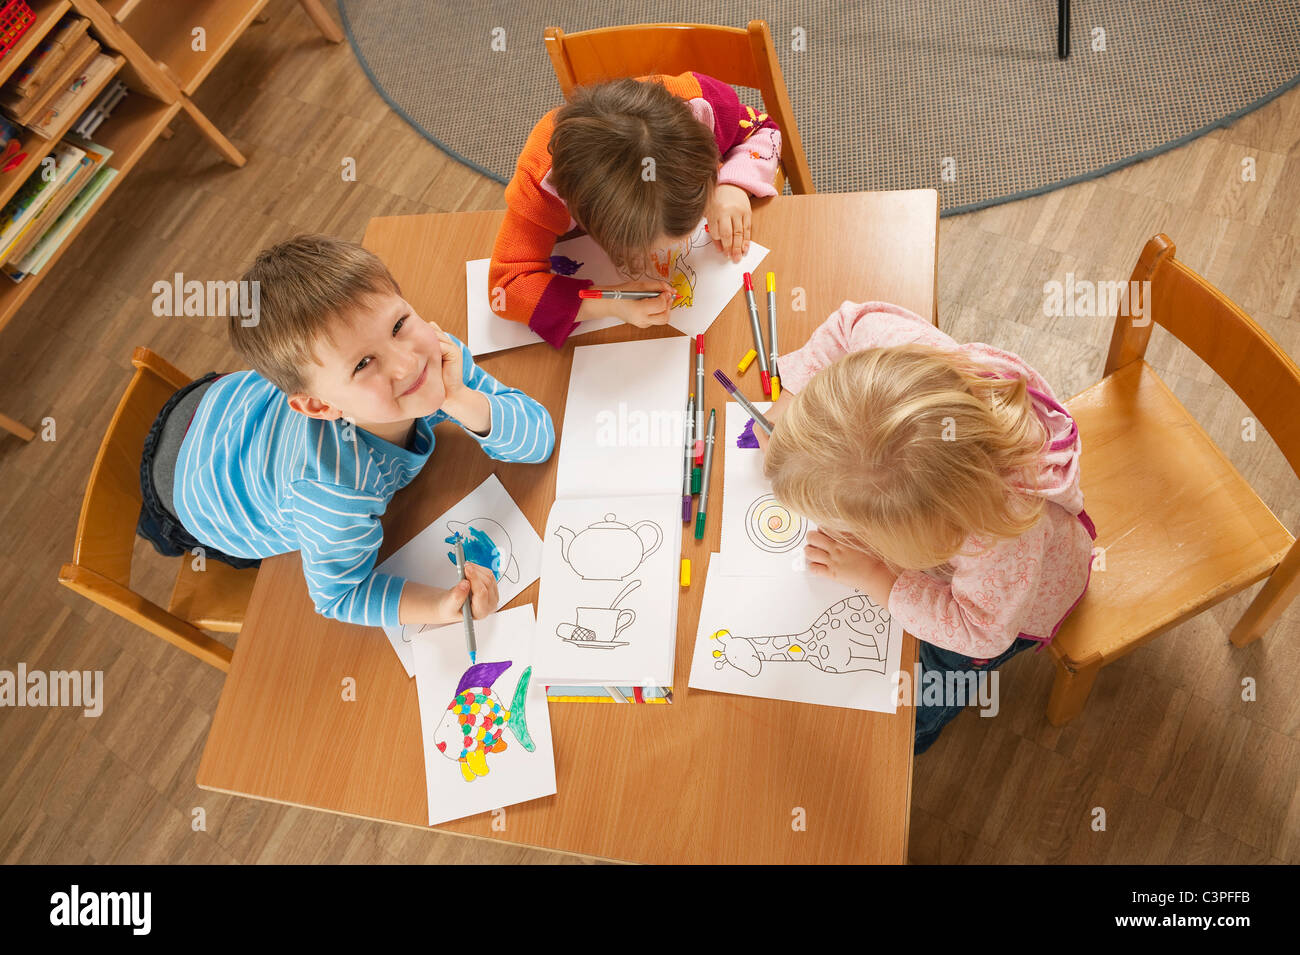 L'Allemagne, les enfants dans les jardins d'assis à table des dessins, elevated view Banque D'Images